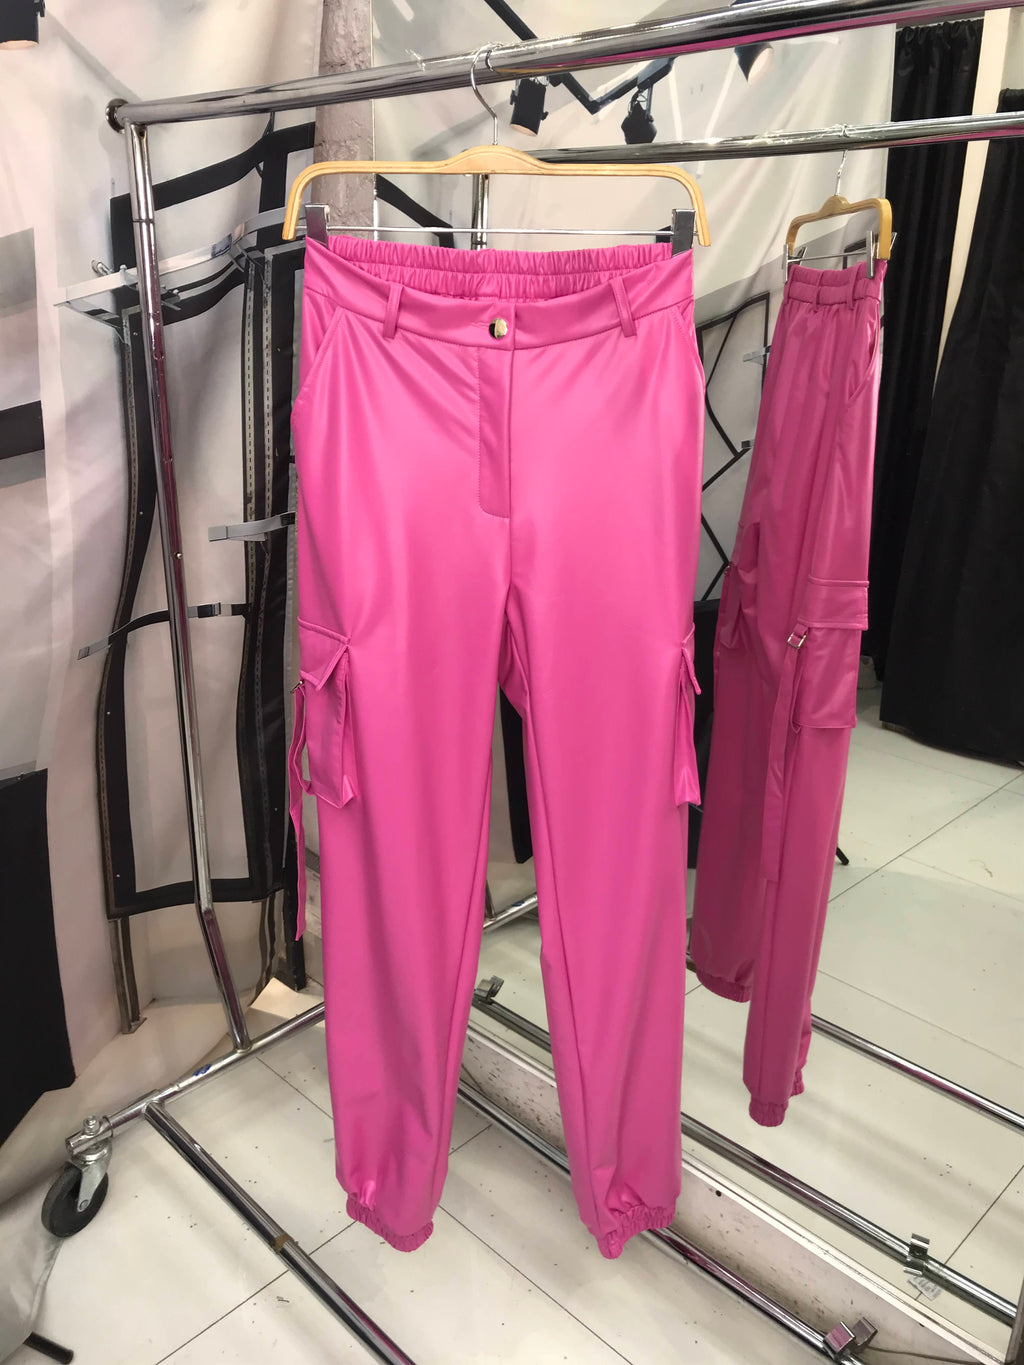 Pantalon rosa de vinipiel tipo cargo